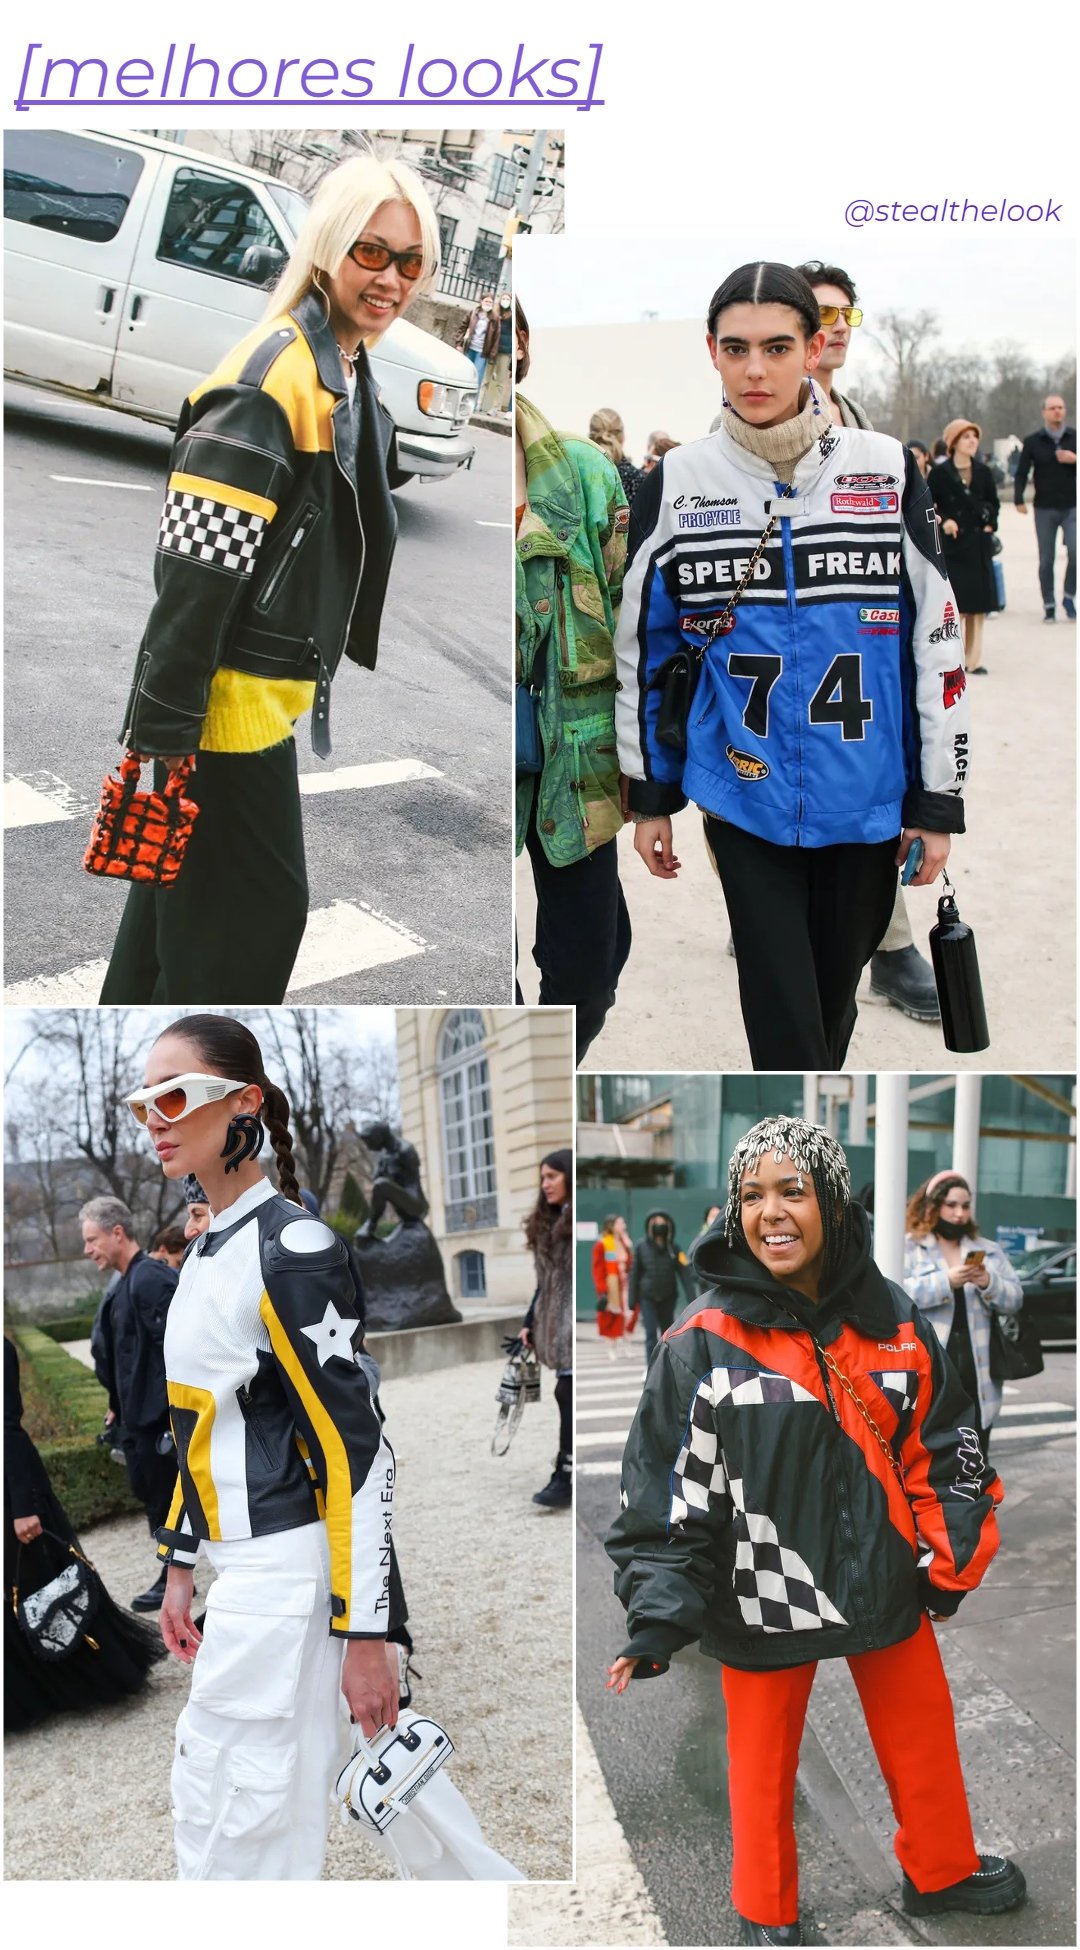 Street Style - roupas diversas - Fórmula 1 - inverno - colagem de imagens - https://stealthelook.com.br